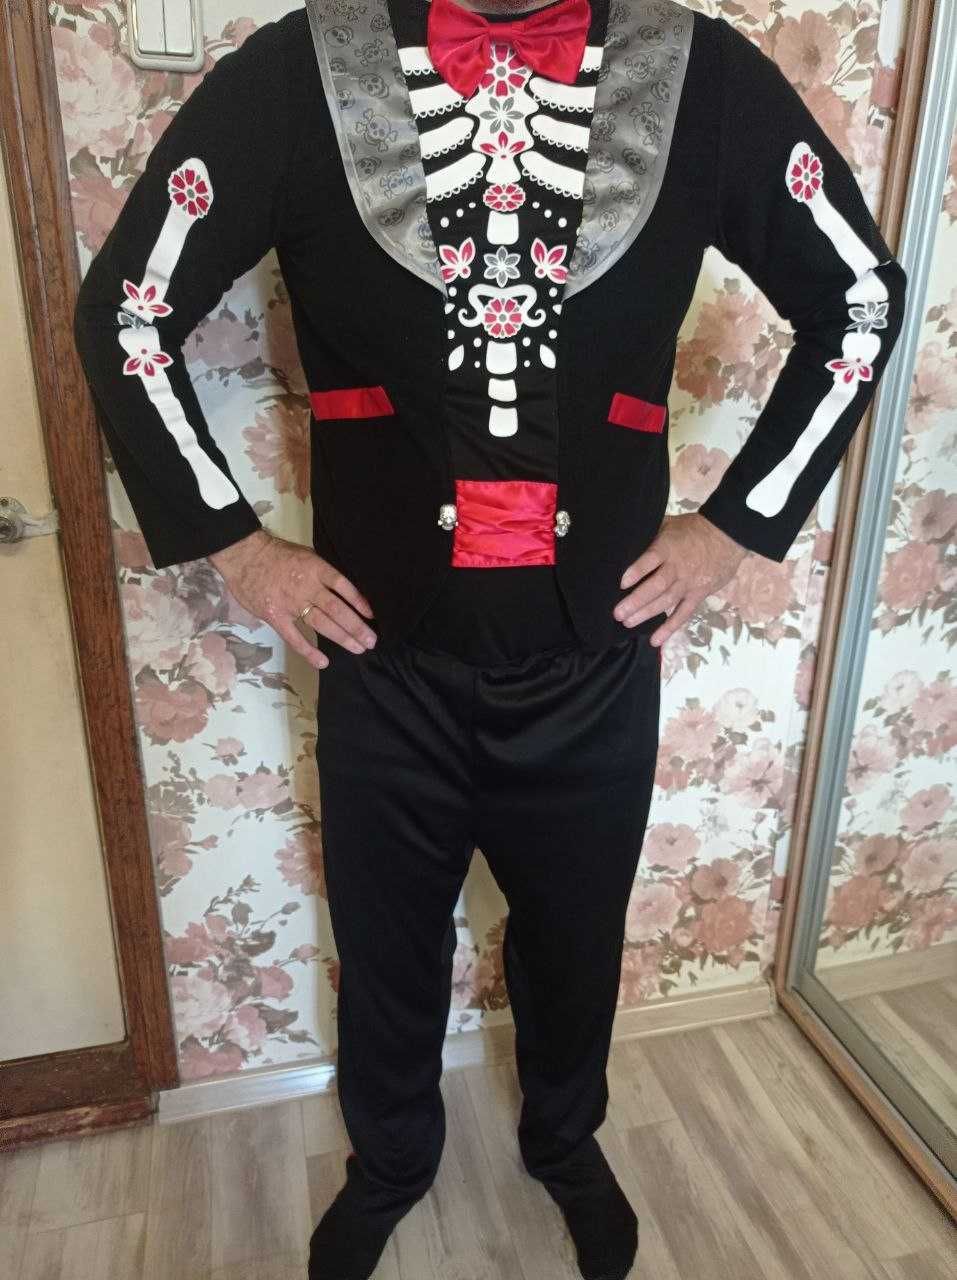 карнавальный костюм зомби, монстр, аниматор скелет до 185 см